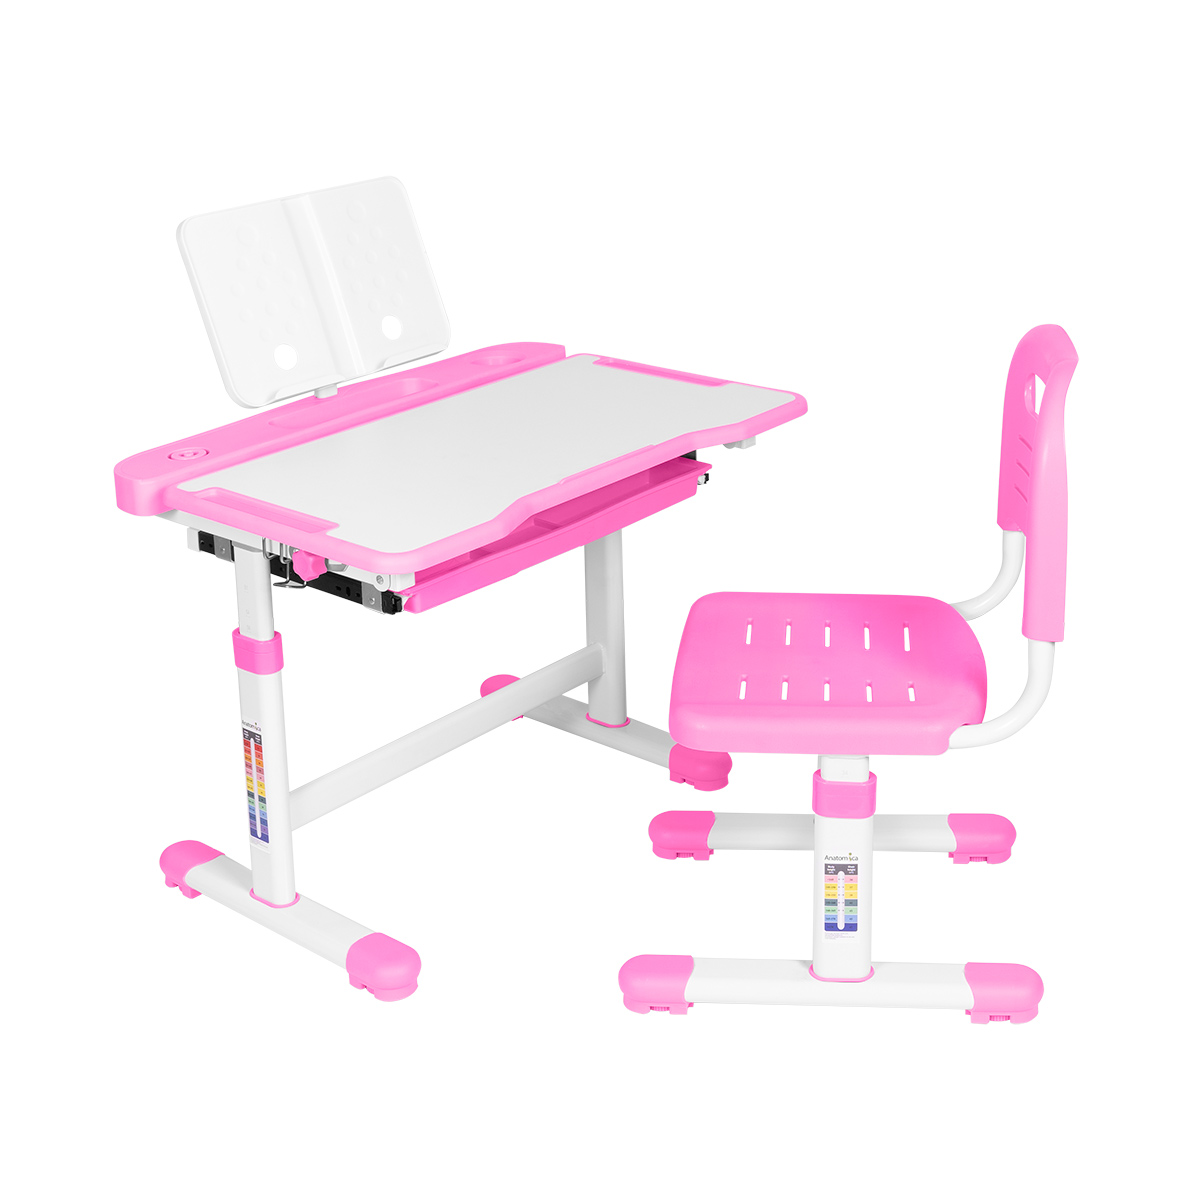 Комплект парта+стул+подставка +органайзер Anatomica Vitera белый/розовый органайзер для декора 10 ячеек 8 7 × 4 3 × 2 см розовый